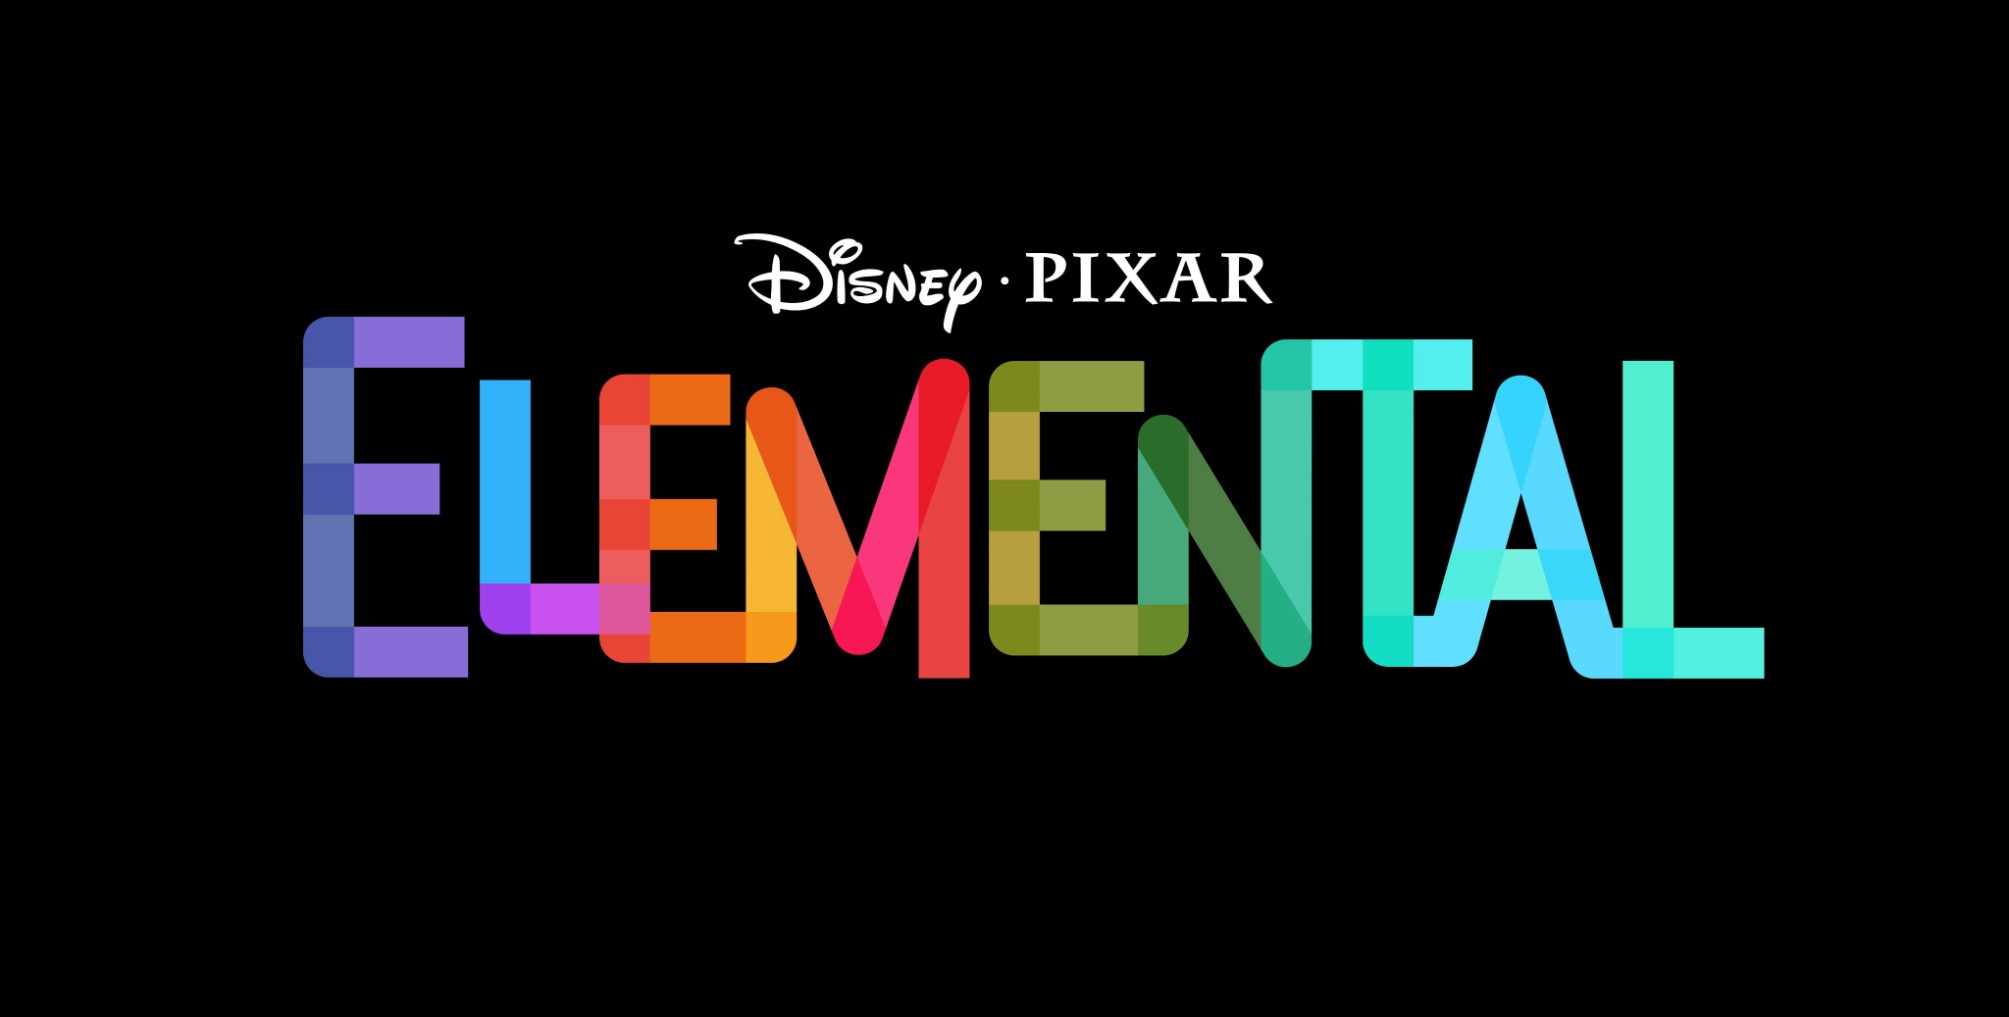 Bộ phim hoạt hình thứ 27 của Pixar sẽ mang tựa đề Elemental. Ảnh: Twitter (@Pixar)